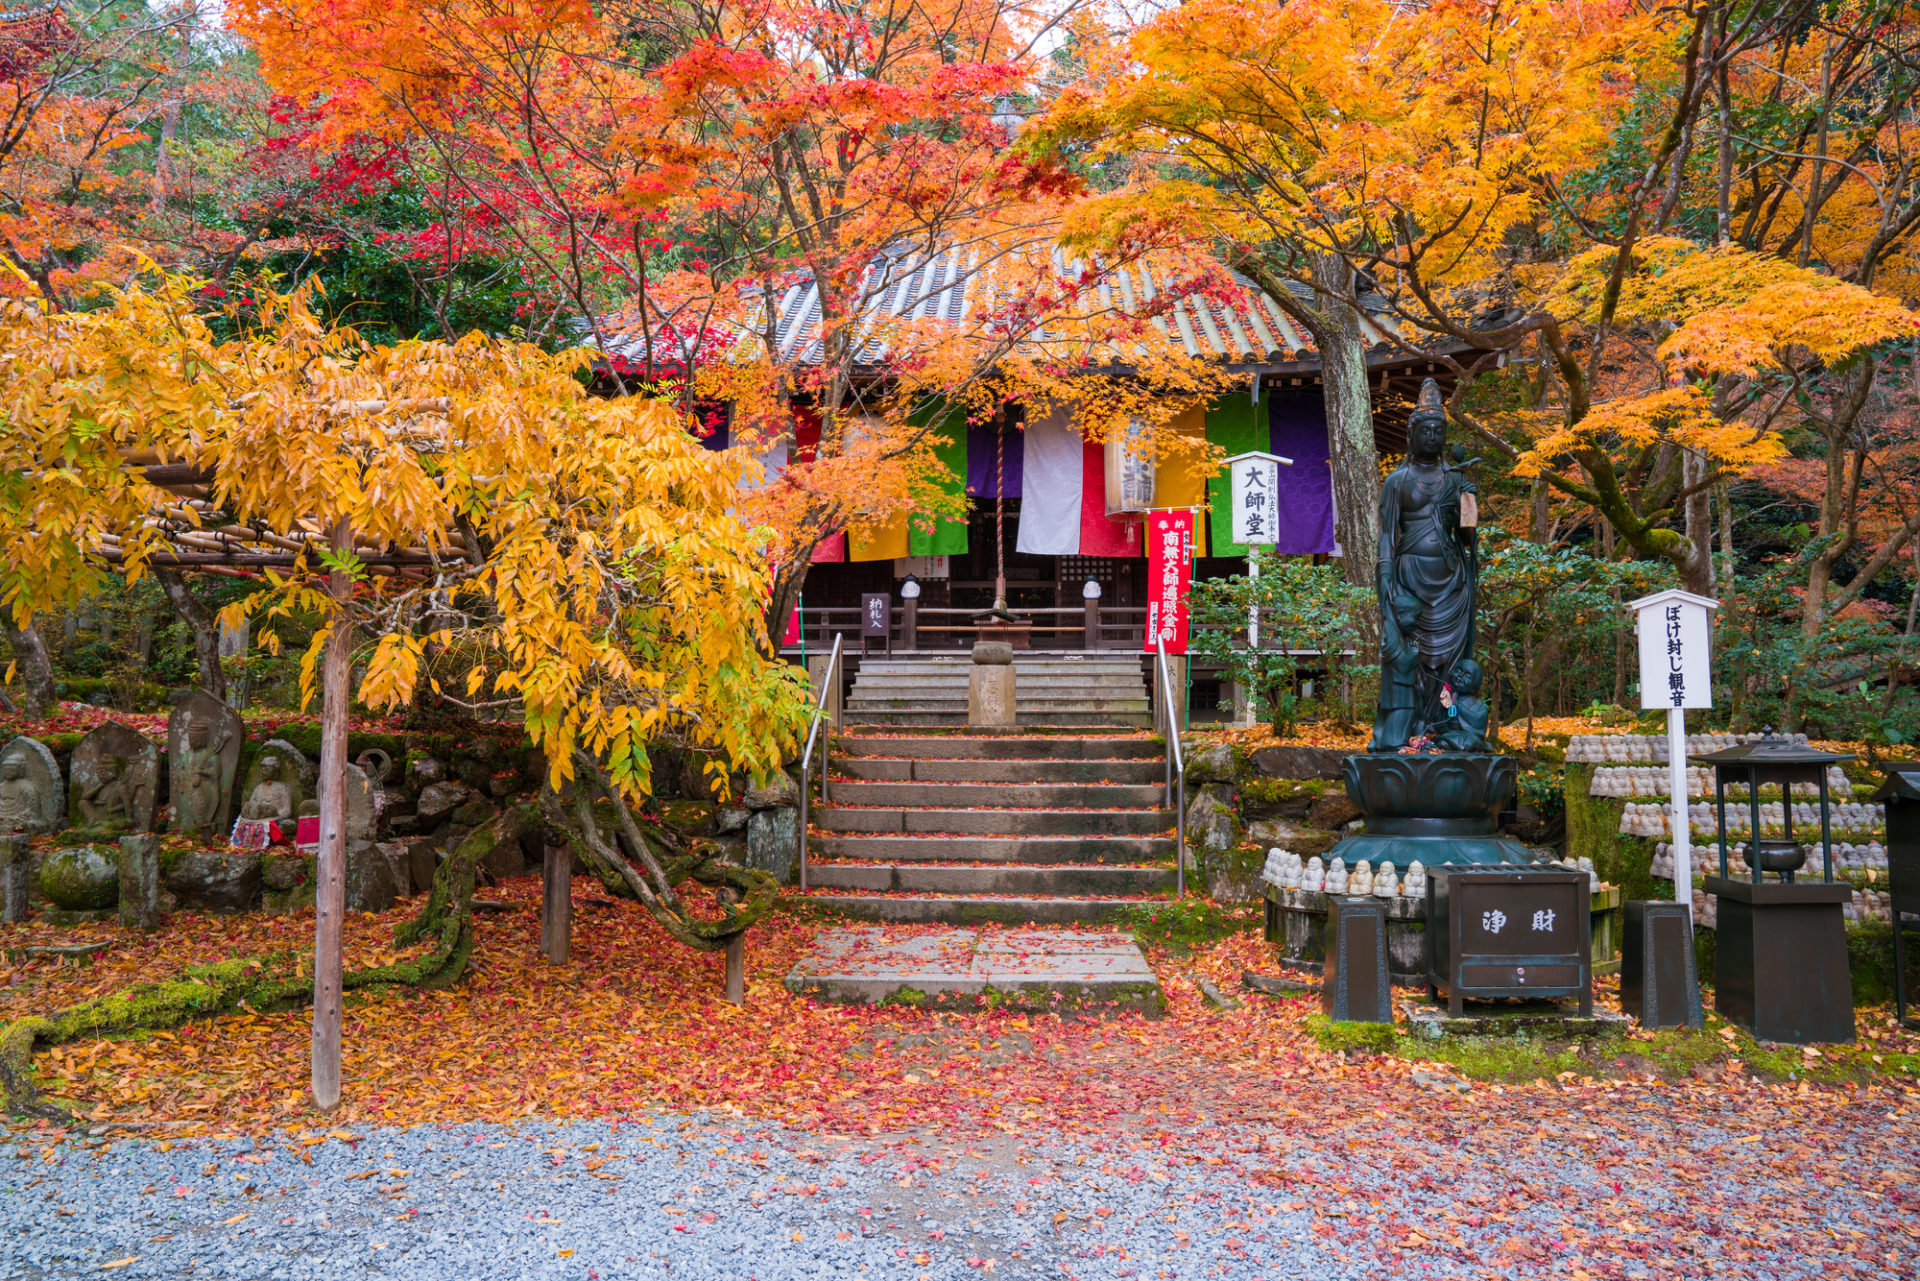 哲學之道 永觀堂 南禪寺 清水寺 東福寺 我們將為您介紹秋天的京都 在東山一帶觀光的指南 Caedekyoto カエデ京都 紅葉 と伝統美を引き継ぐバッグ